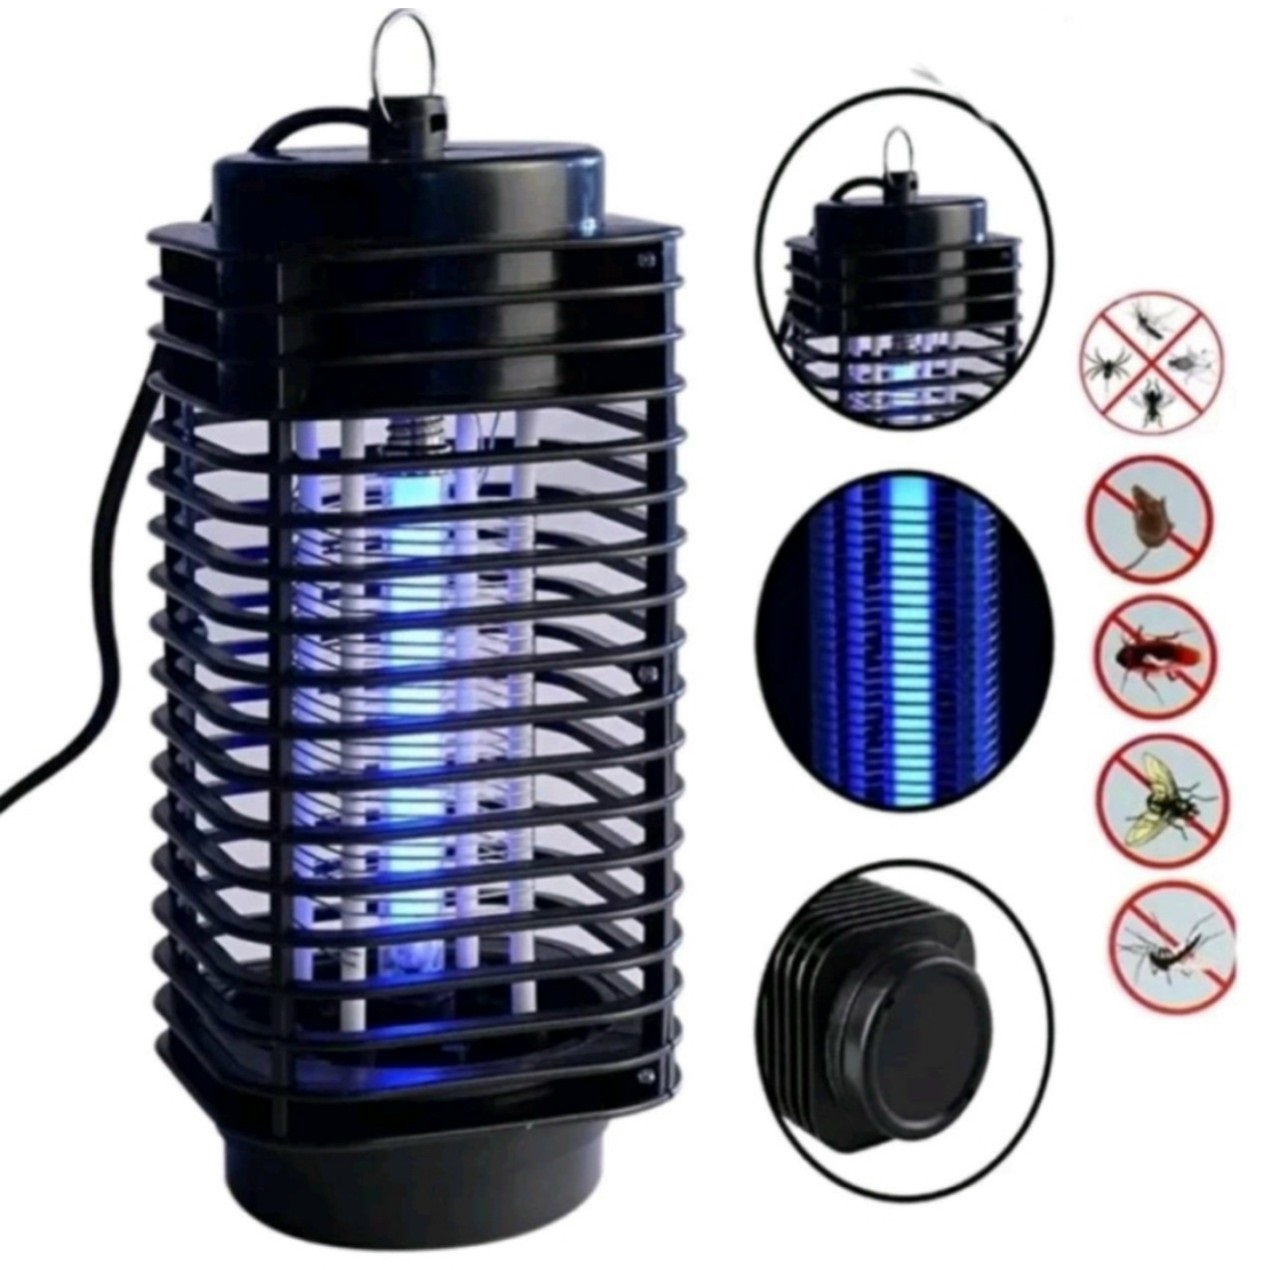 Đèn Bắt Muỗi CHUỒN CHUỒN 3D, Đèn diệt muỗi ELECTRIC kiêm đèn ngủ ...